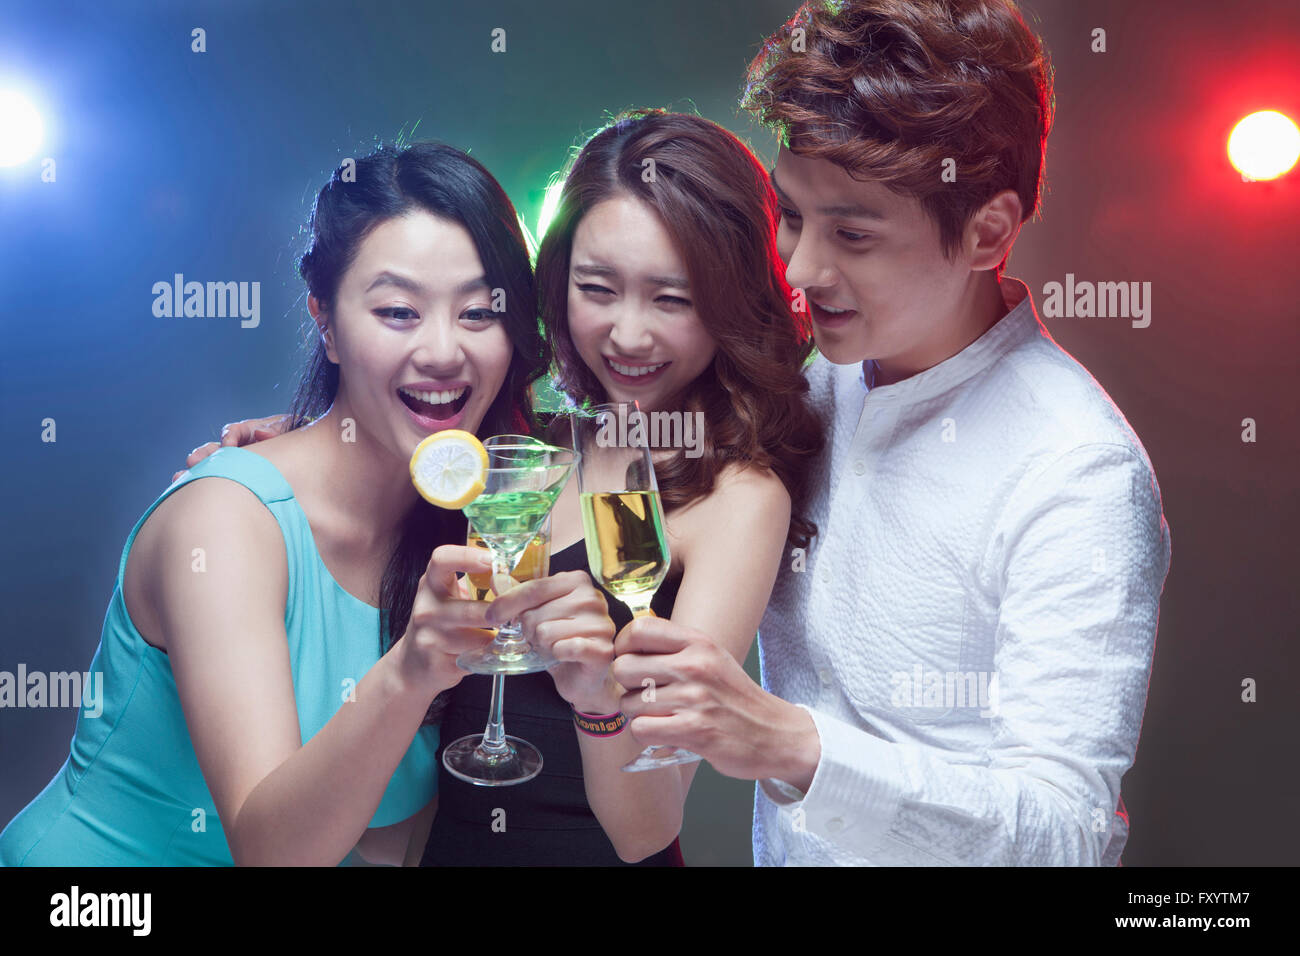 Retrato de tres jóvenes gente sonriente tostar en discoteca Foto de stock